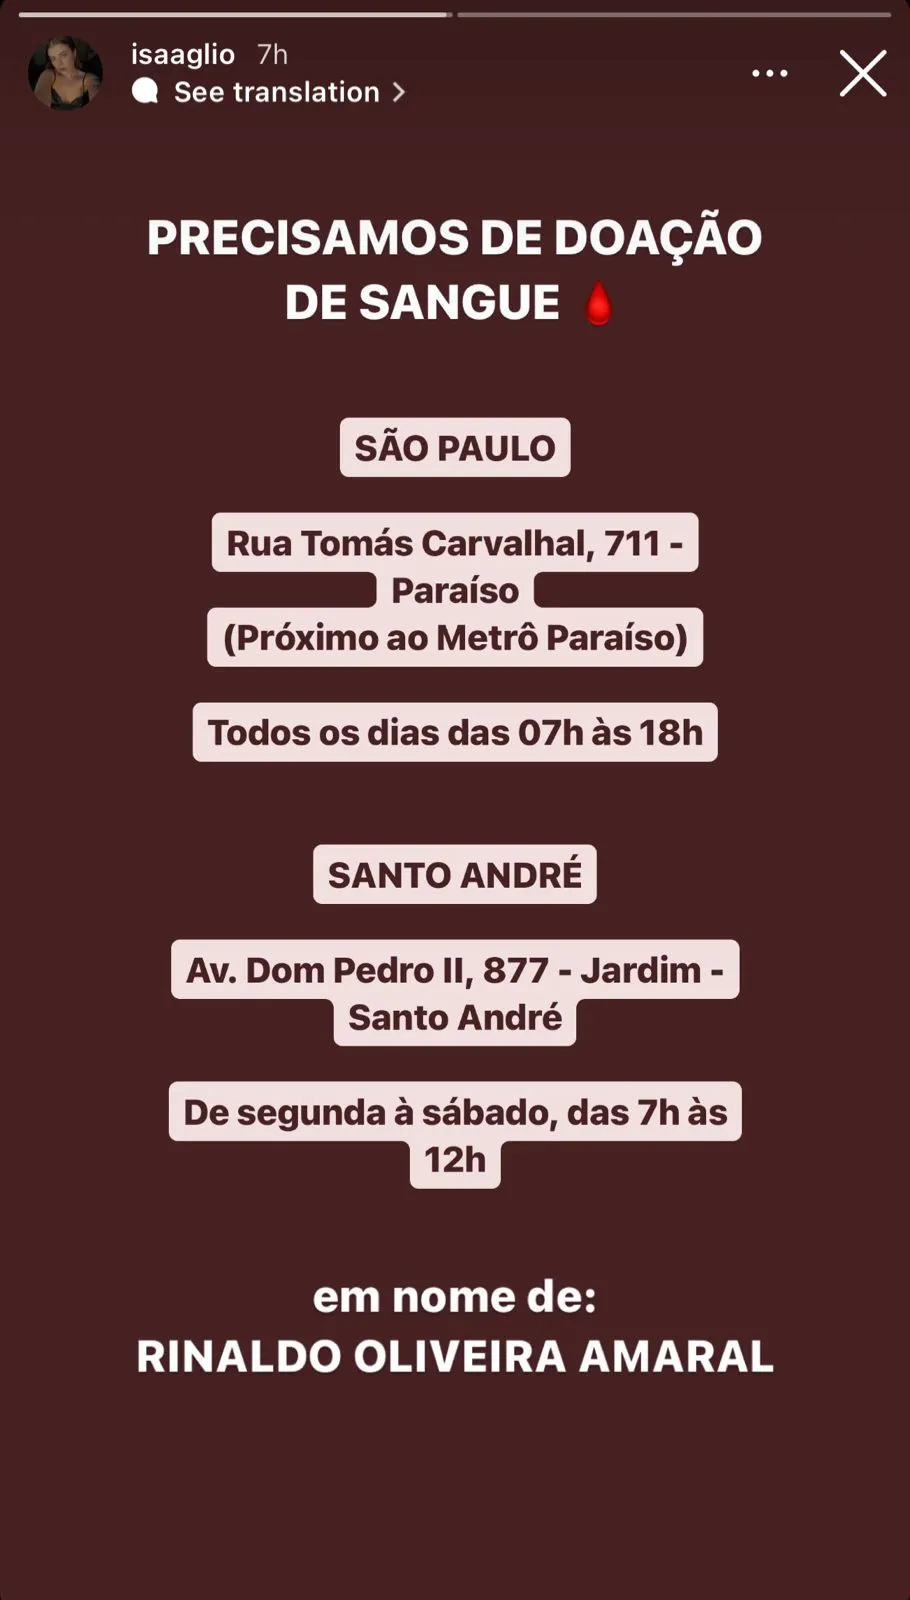 As doações estão sendo feitas em São Paulo e Santo André